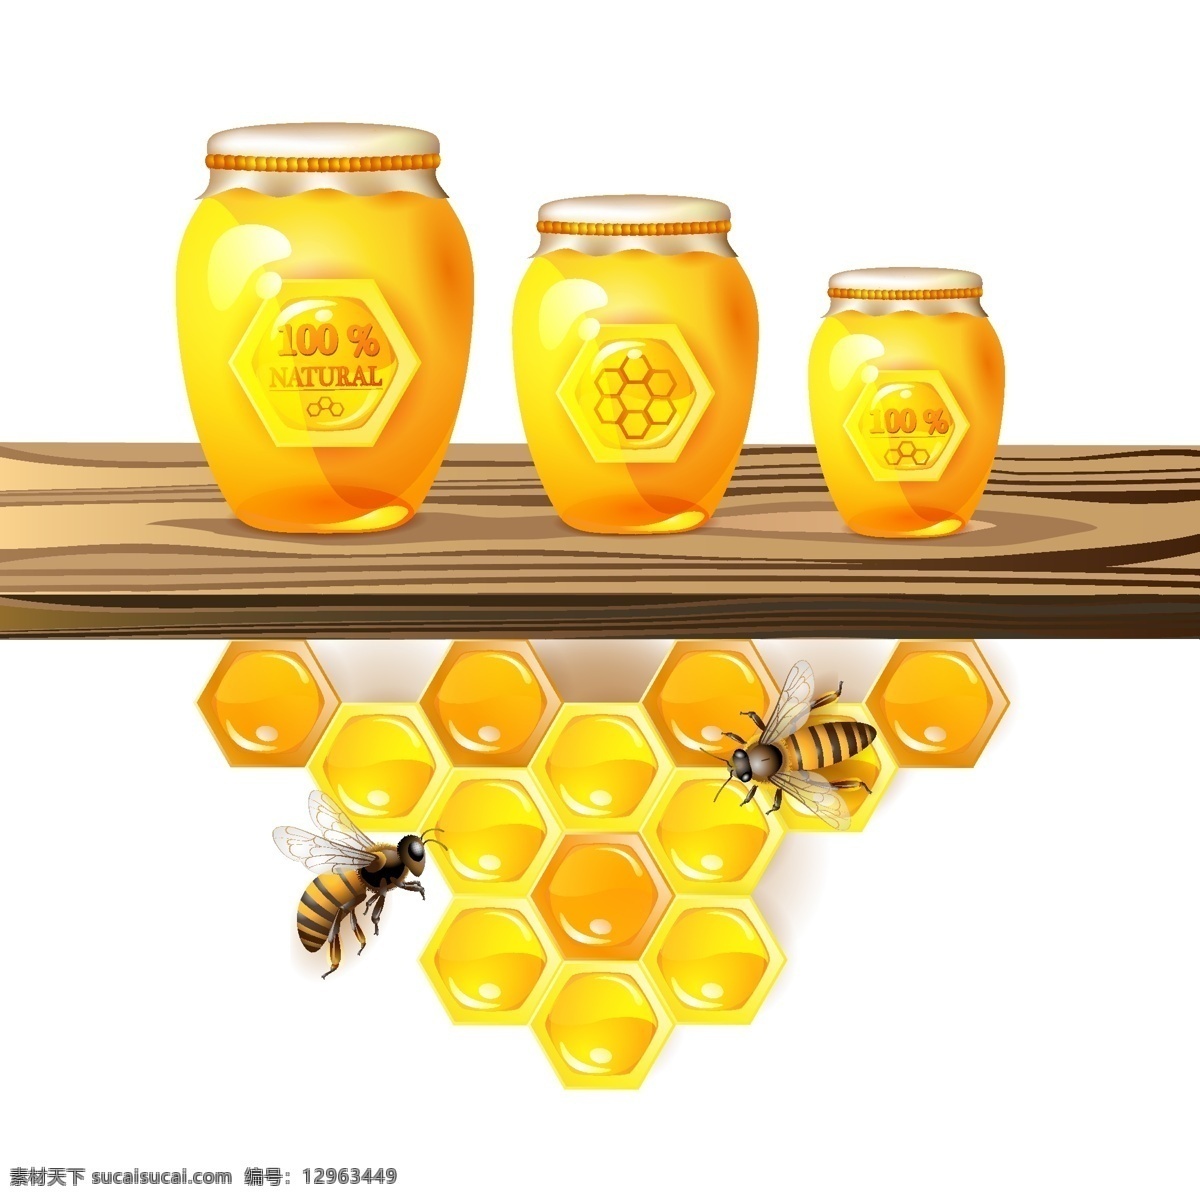 蜜蜂 采 蜜 背景 潮流 底纹 蜂巢 蜂蜜 金色 昆虫 梦幻 蜜蜂采蜜 采蜜 蜂王浆 时尚 矢量 蜜蜂主题 生物世界